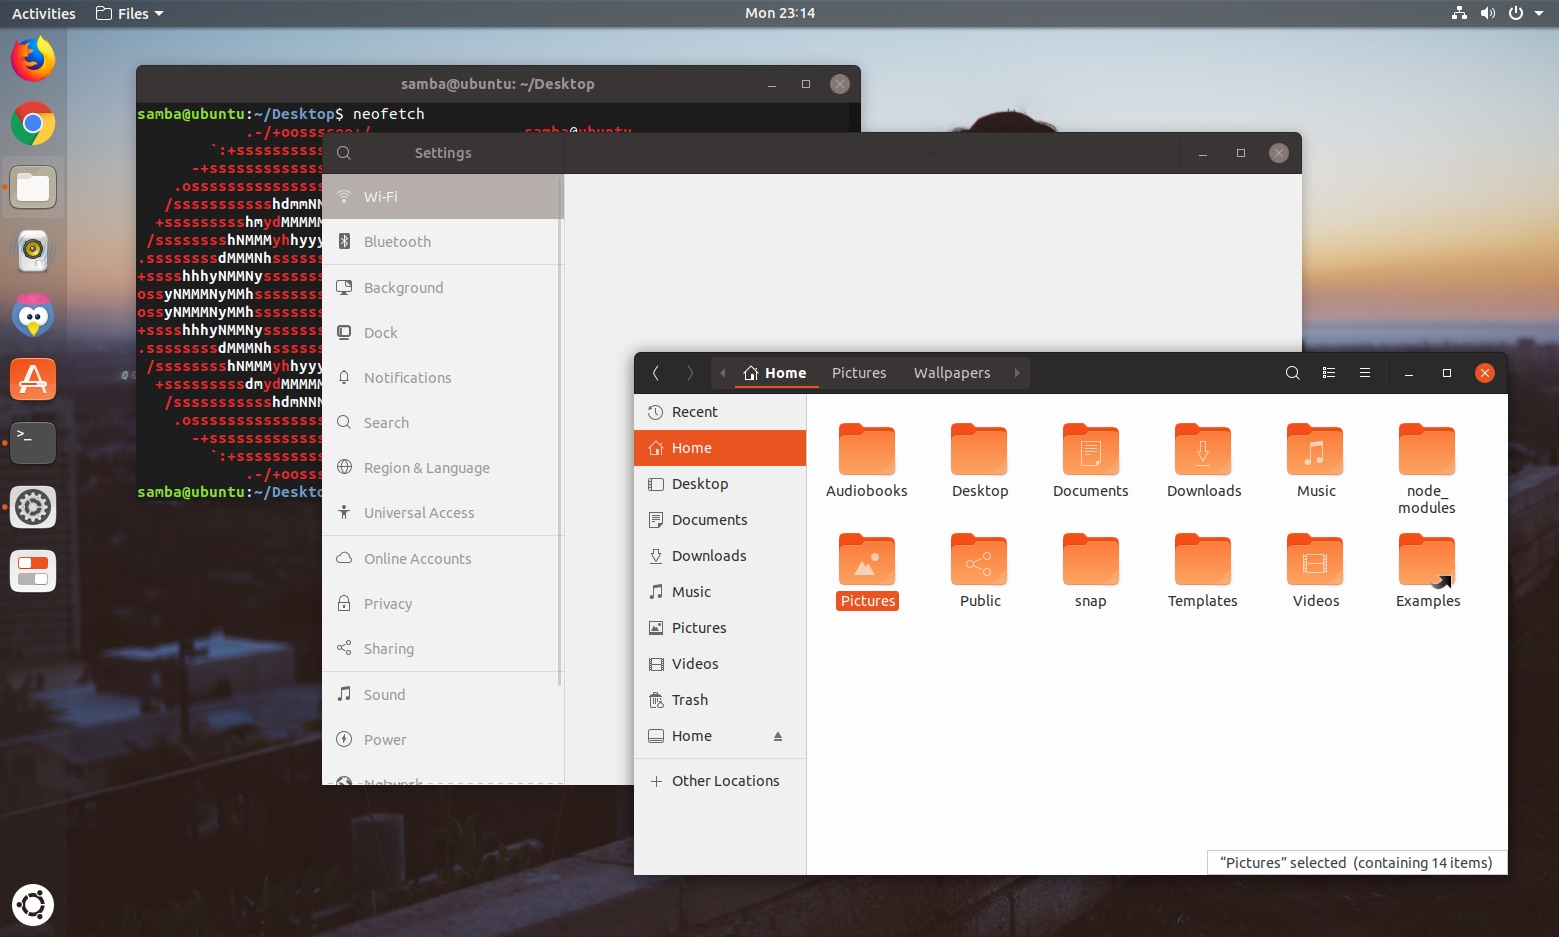 大失所望，Ubuntu 18.04 不会推出新的 GTK 主题